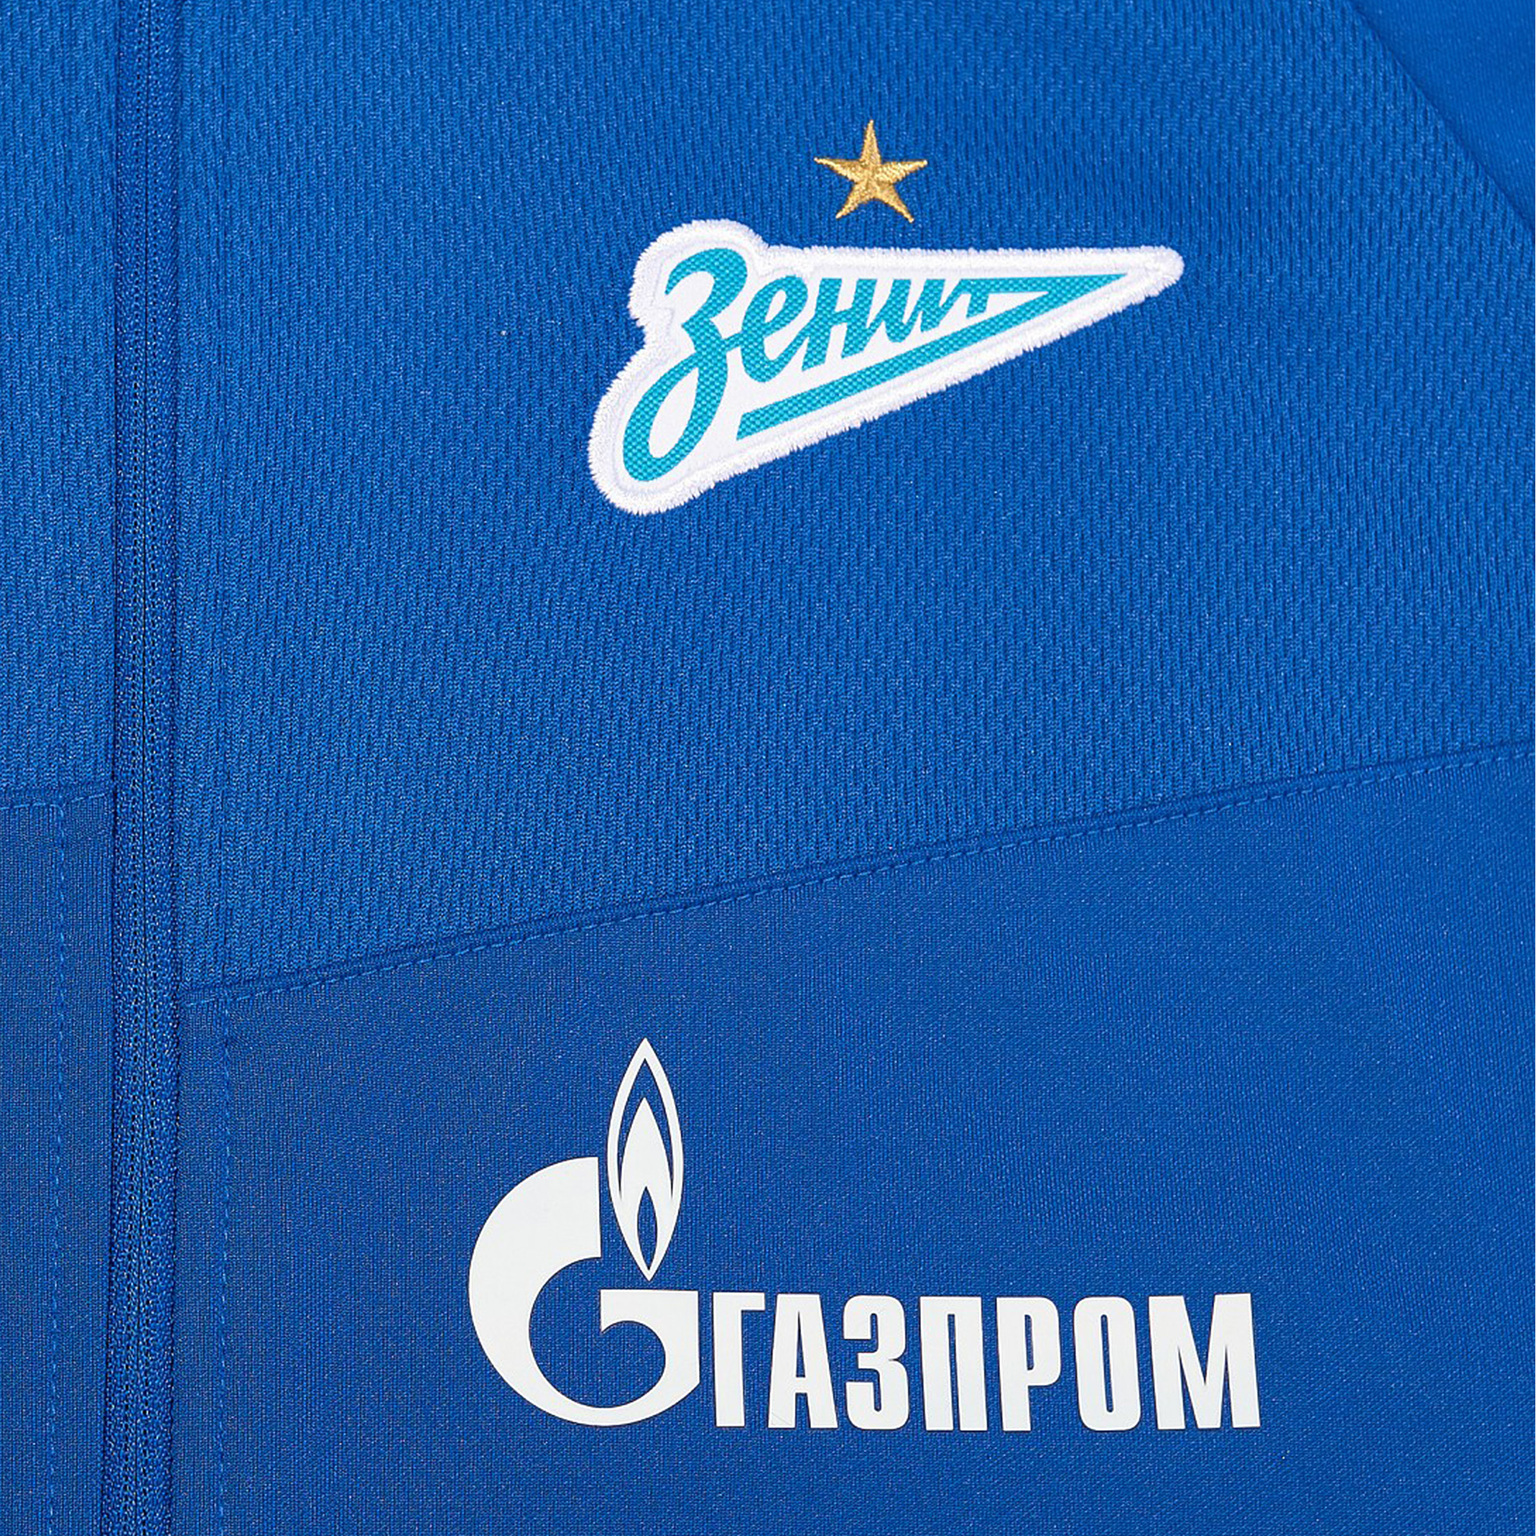 Костюм спортивный подростковый Nike Zenit сезон 2020/21